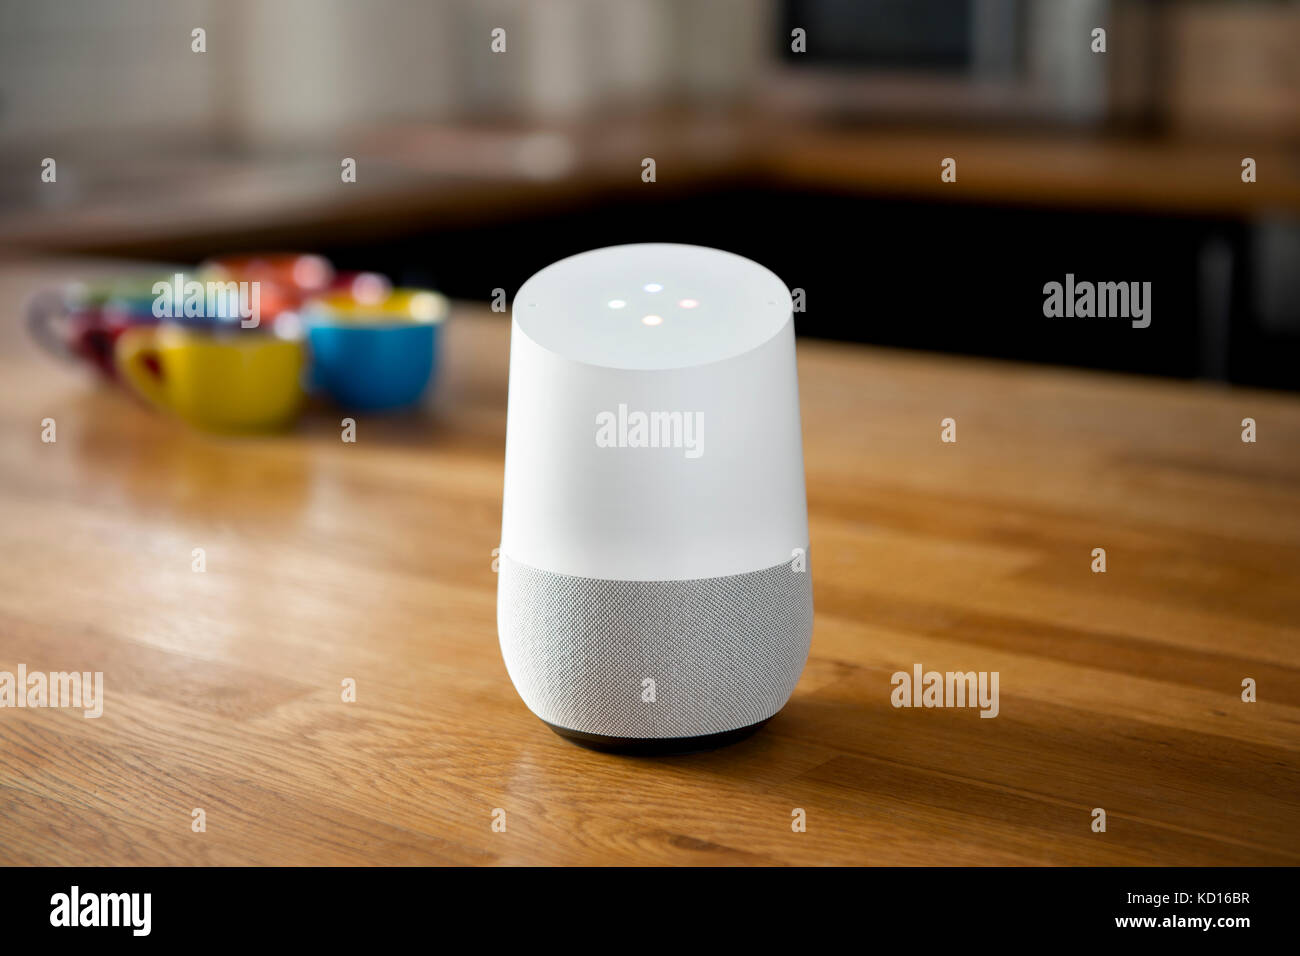 Il rilascio 2016 Home page di Google smart speaker e intelligent assistente personale colpo del dispositivo in un ambiente domestico (solo uso editoriale). Foto Stock